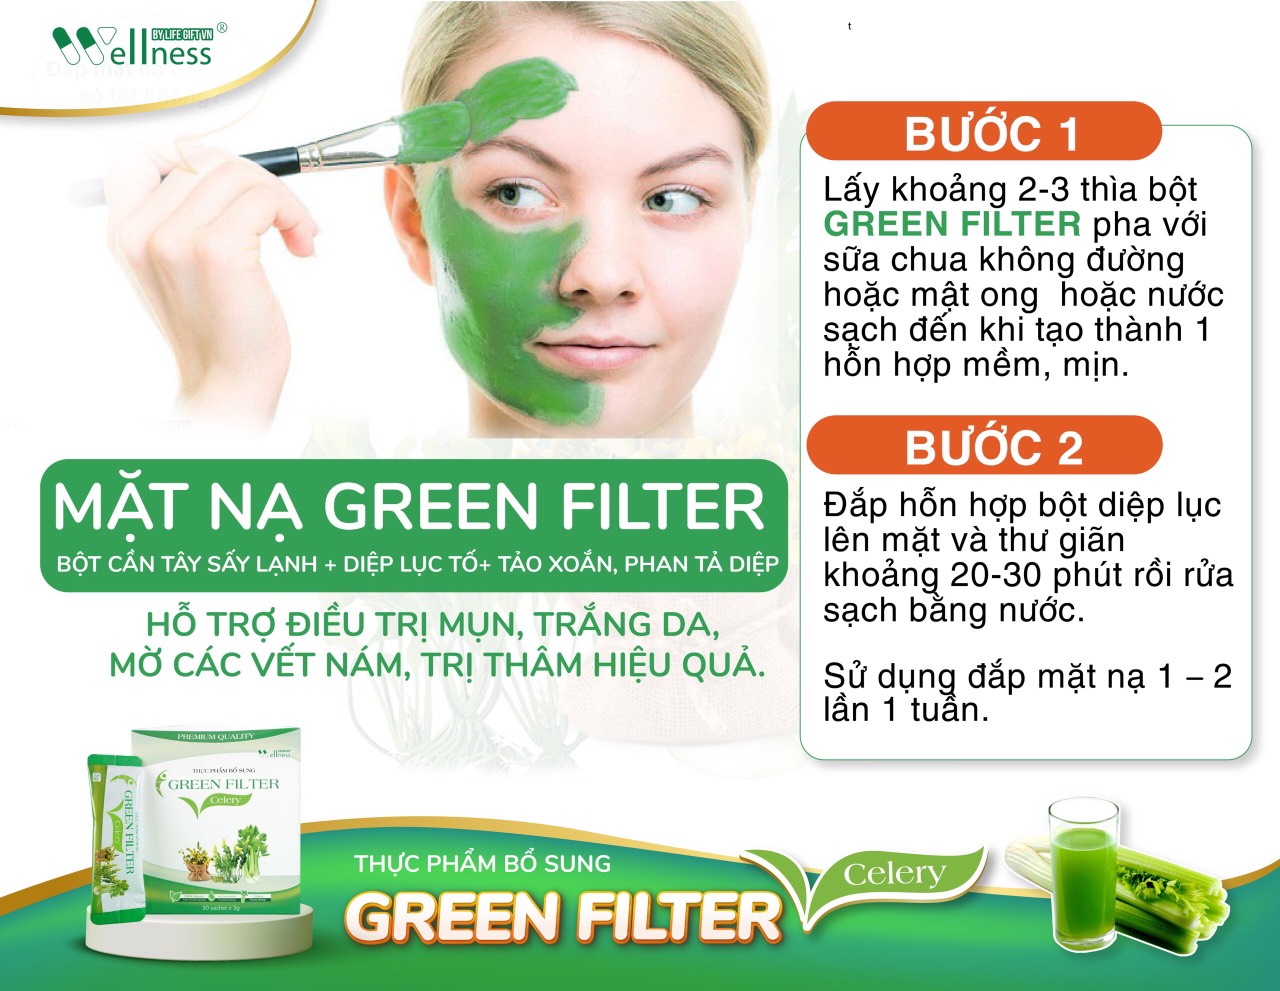 Thực Phẩm Bổ Sung Bột Cần Tây Sấy Lạnh Diệp Lục Green Filter Celery có thể dùng làm mặt nạ đắp mặt - Droppii Shops